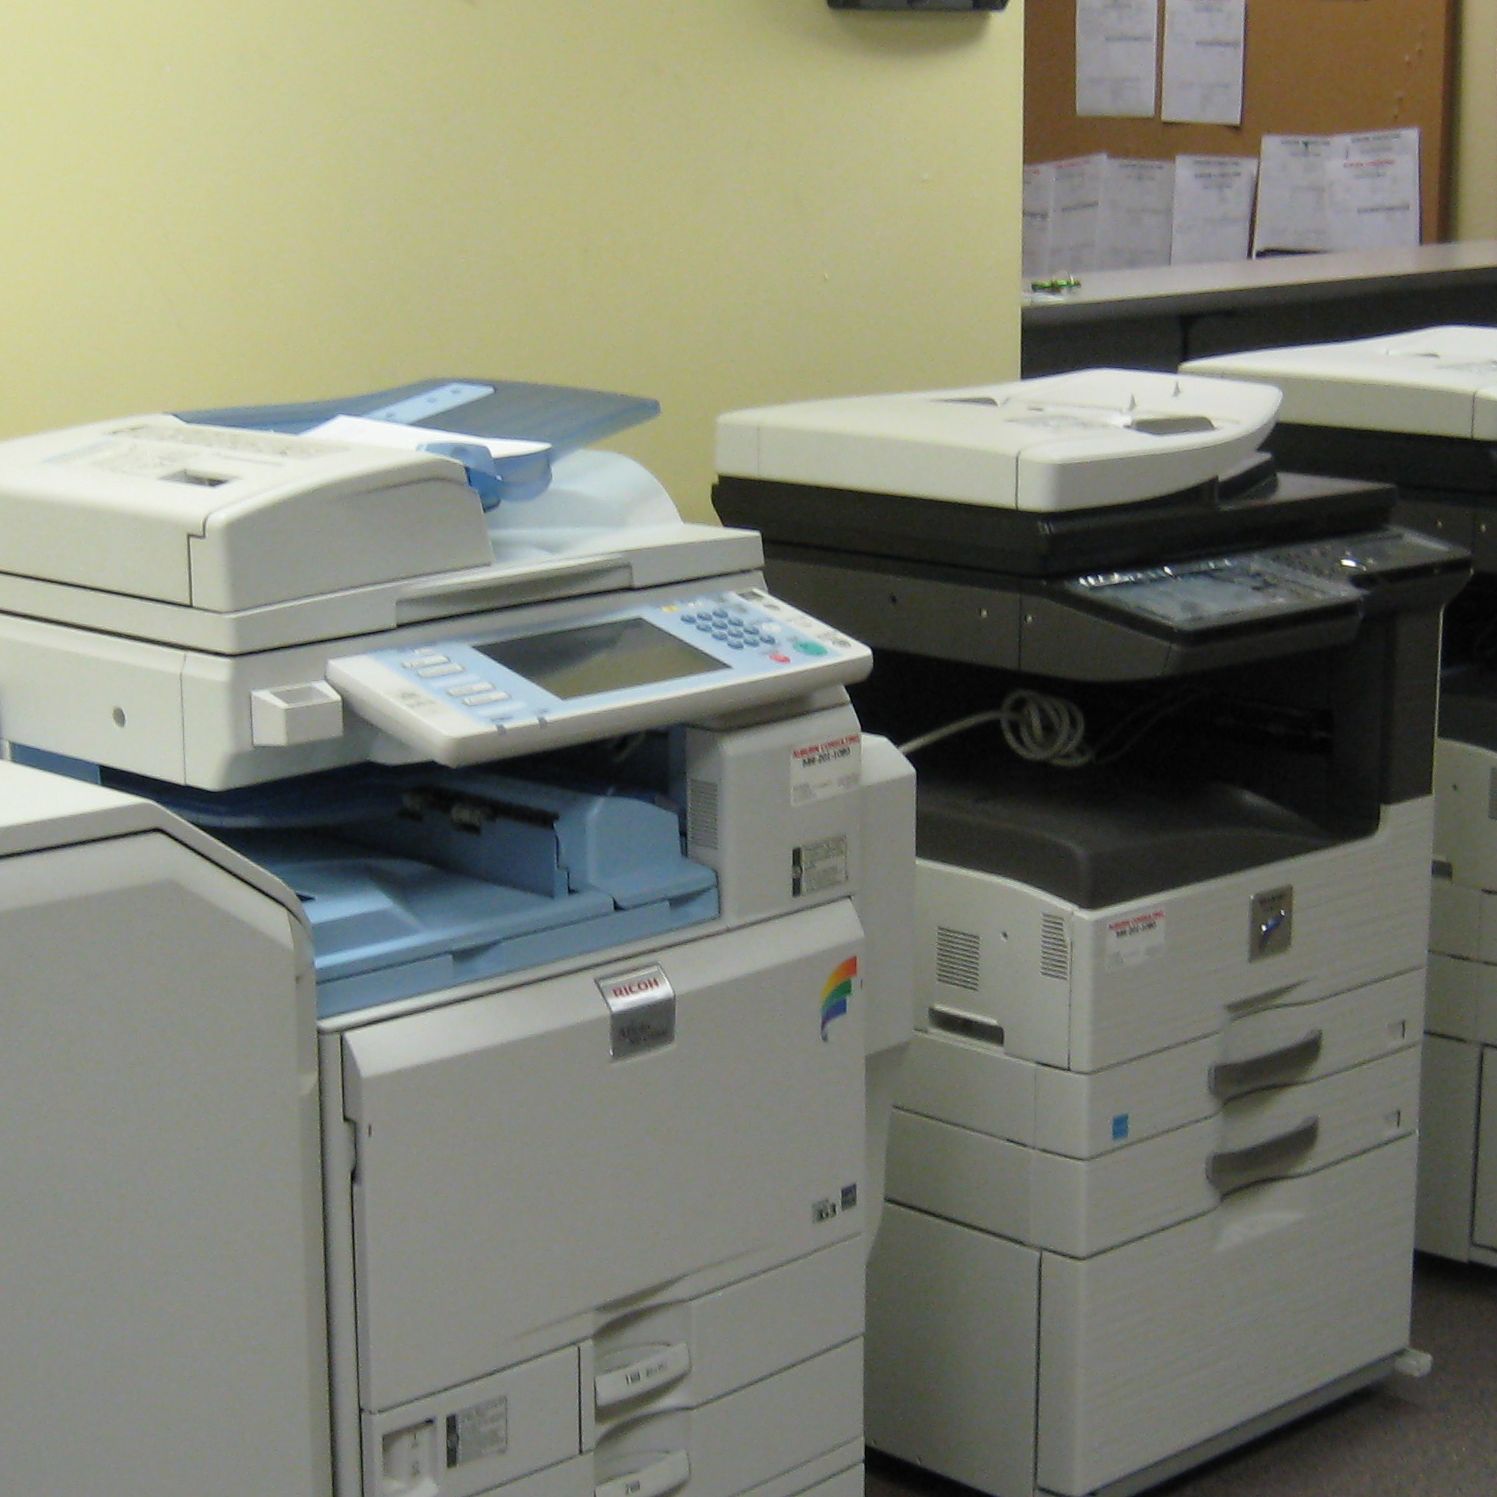 Copy Machine Sales in Howell, Michigan